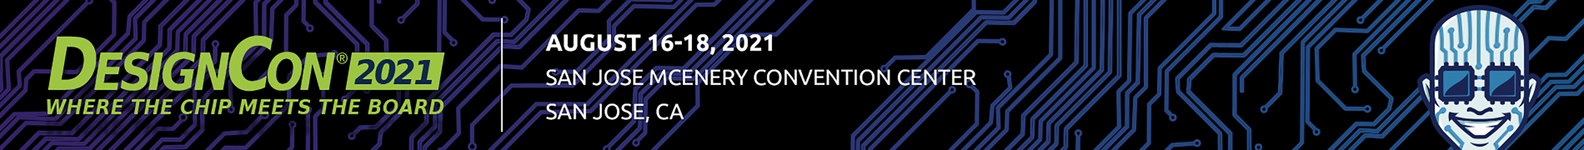 DesignCon 2021 logo